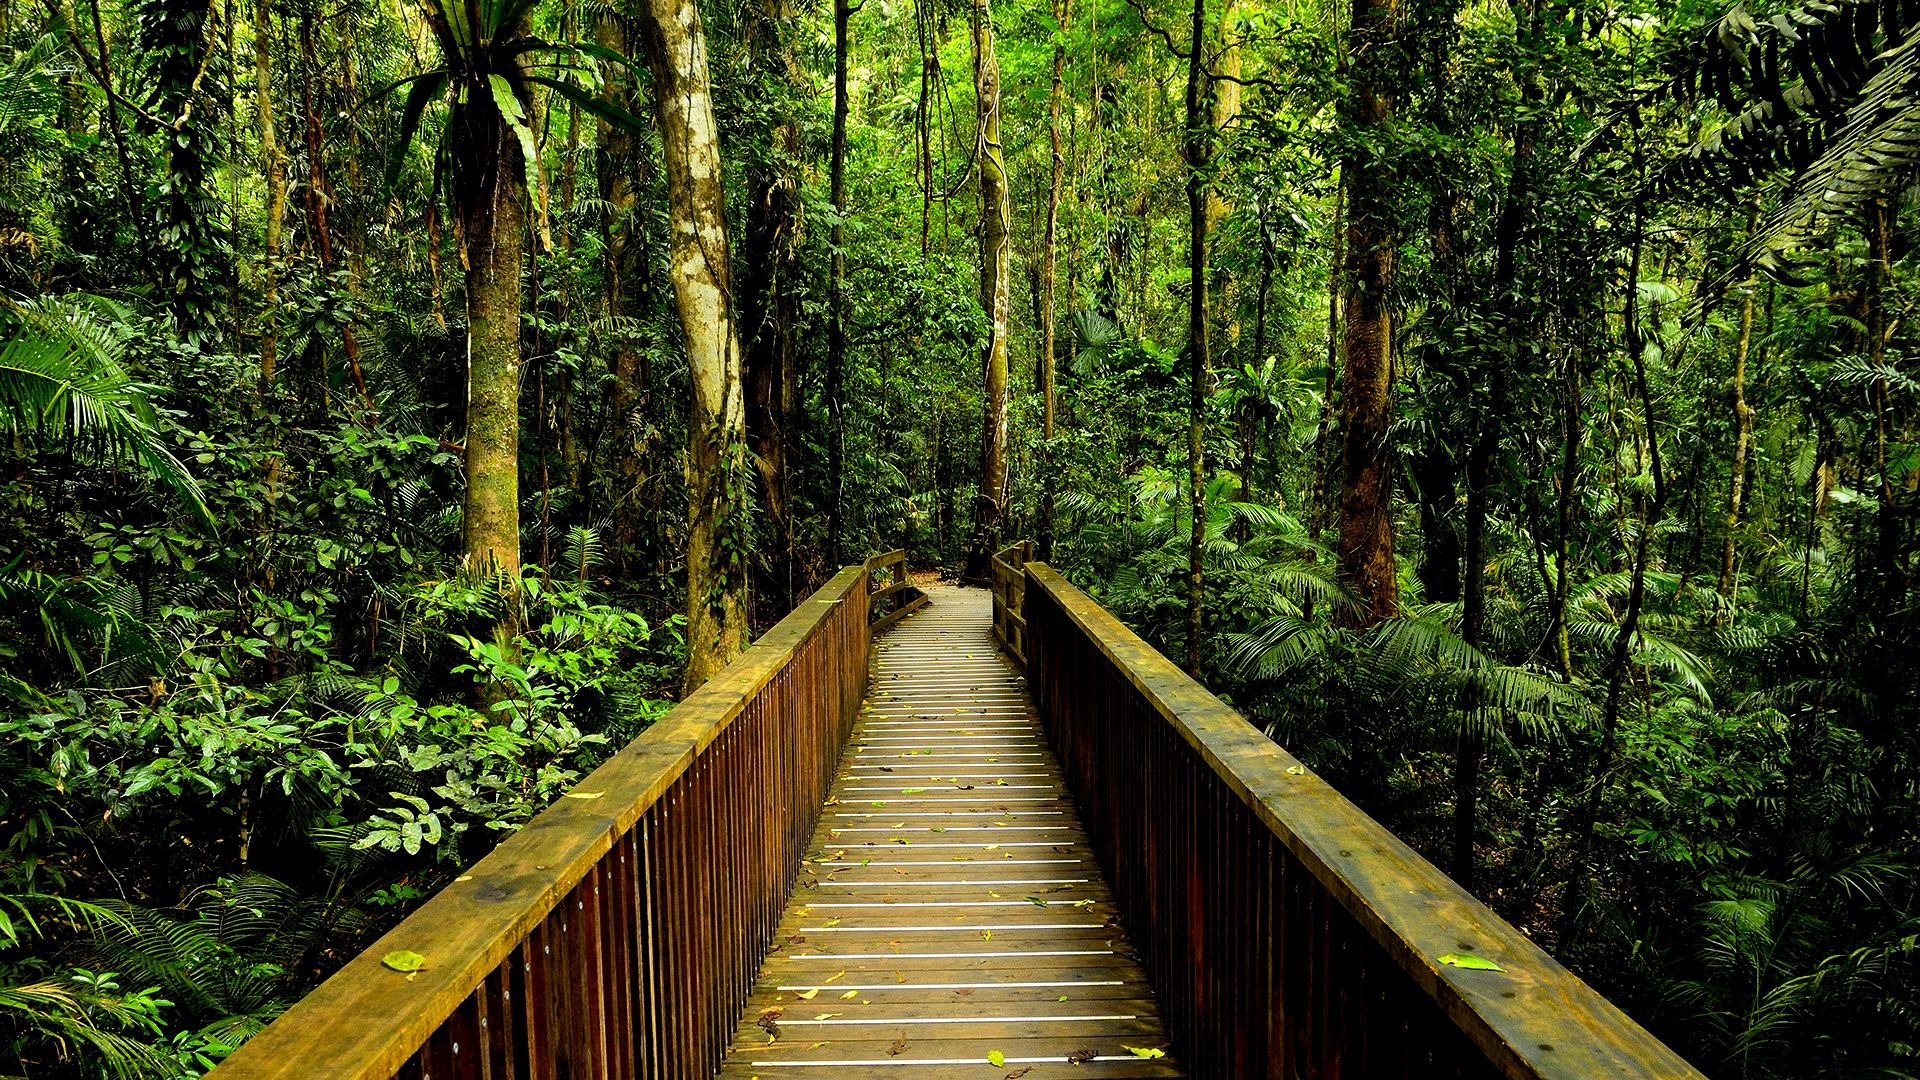 دانلود عکس با کیفیت بالا برای چاپ جنگل گرمسیری